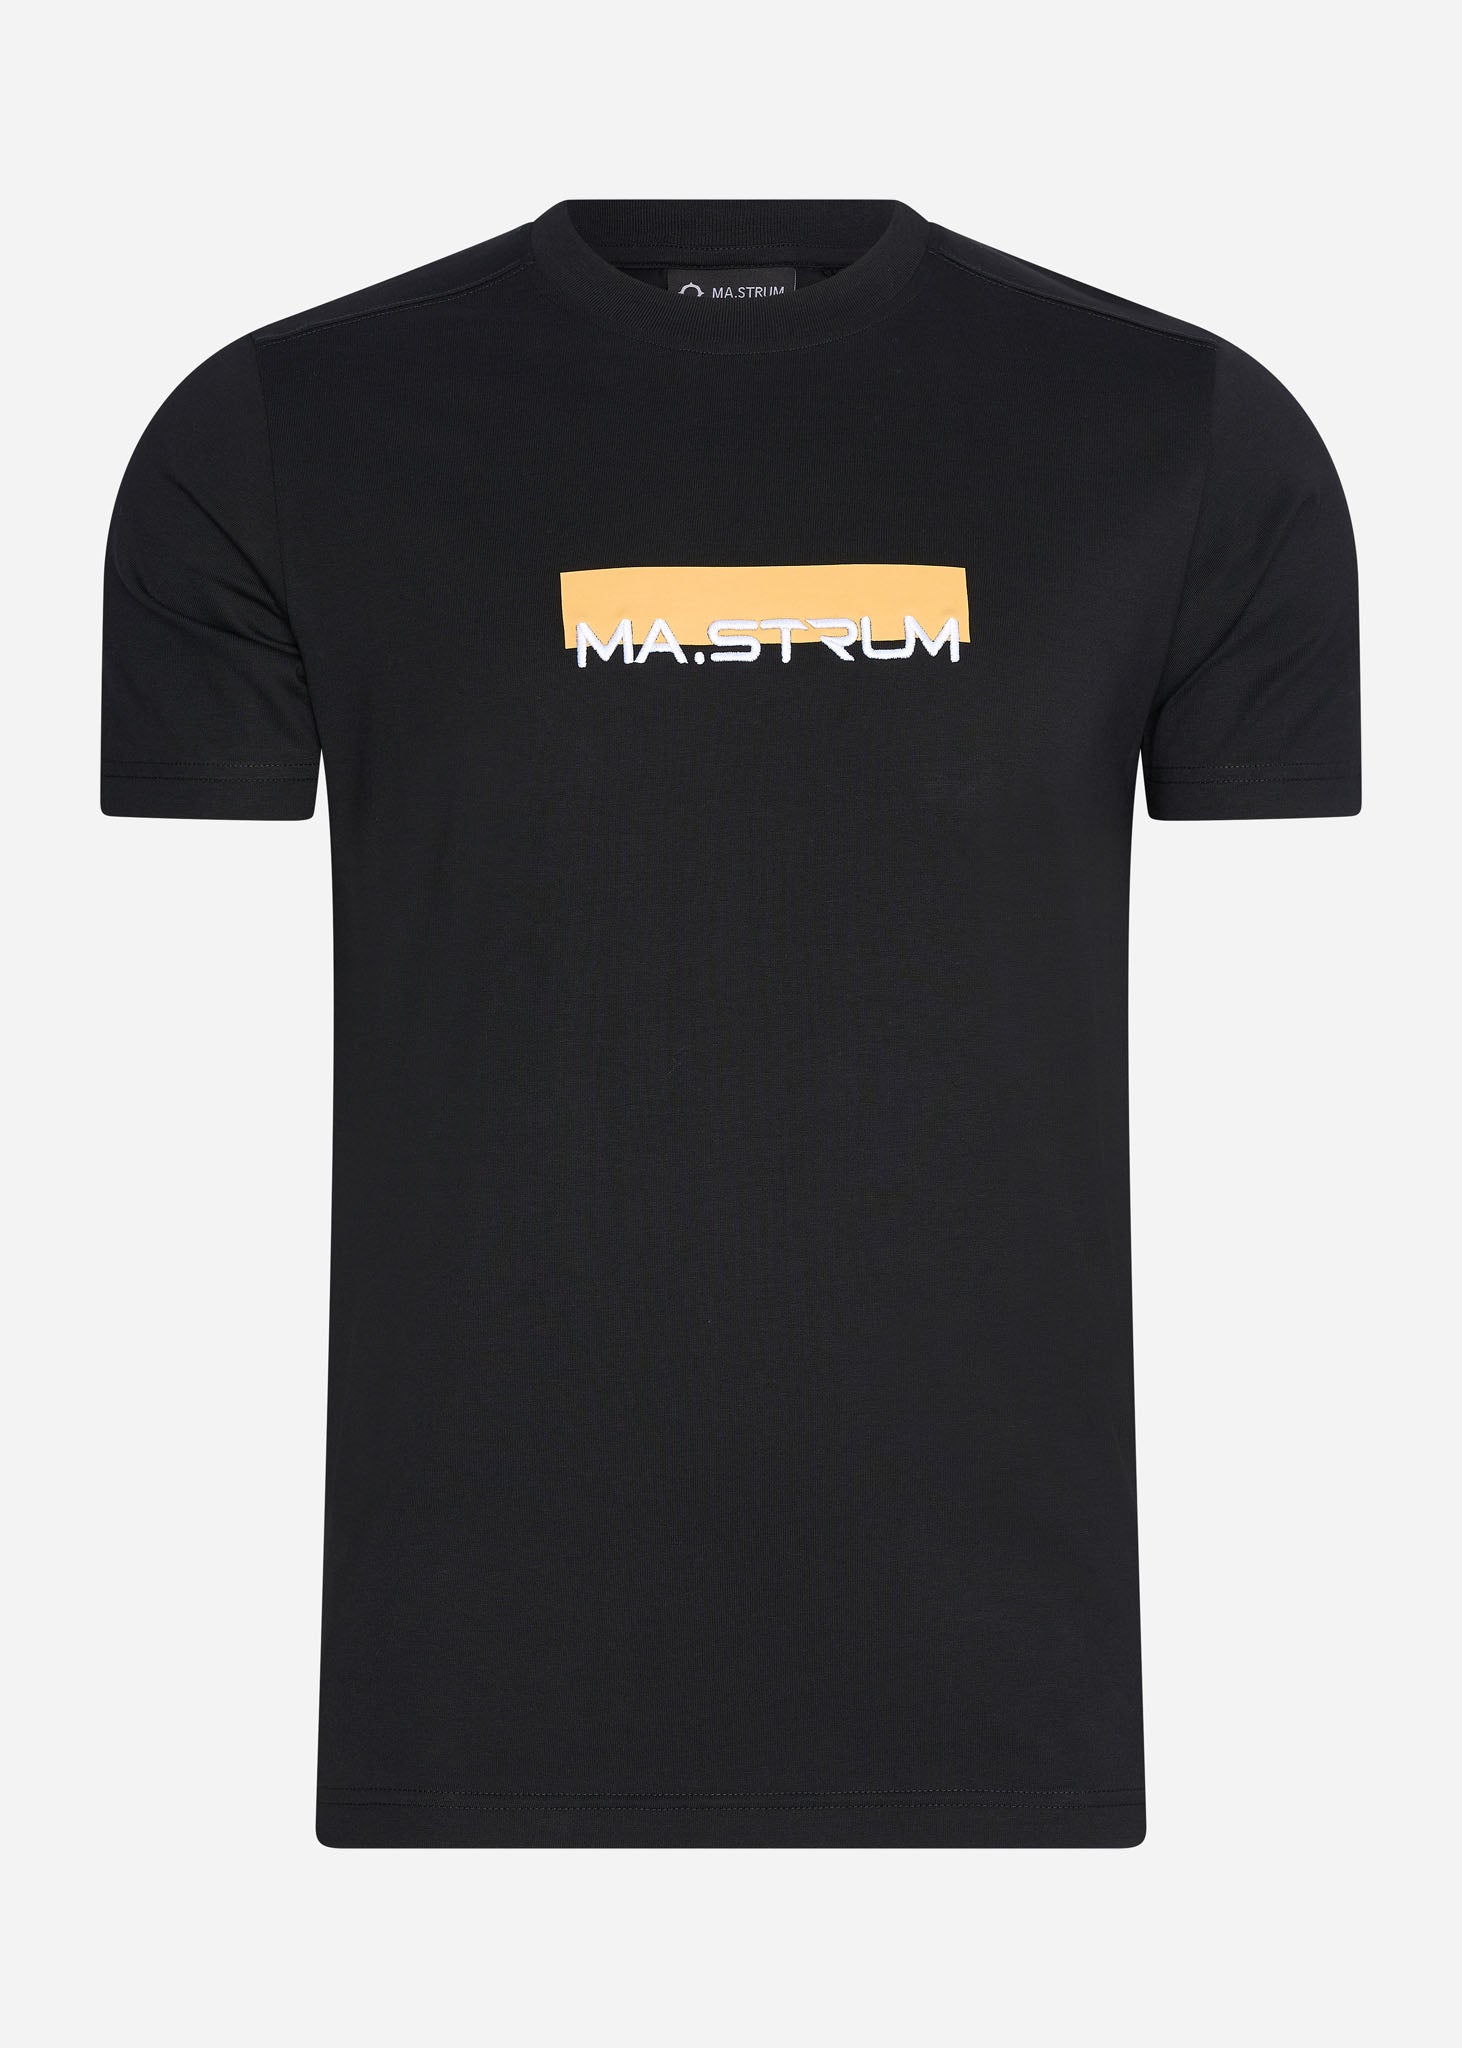 MA.Strum T-shirts  MA.Strum block print tee - jet black 